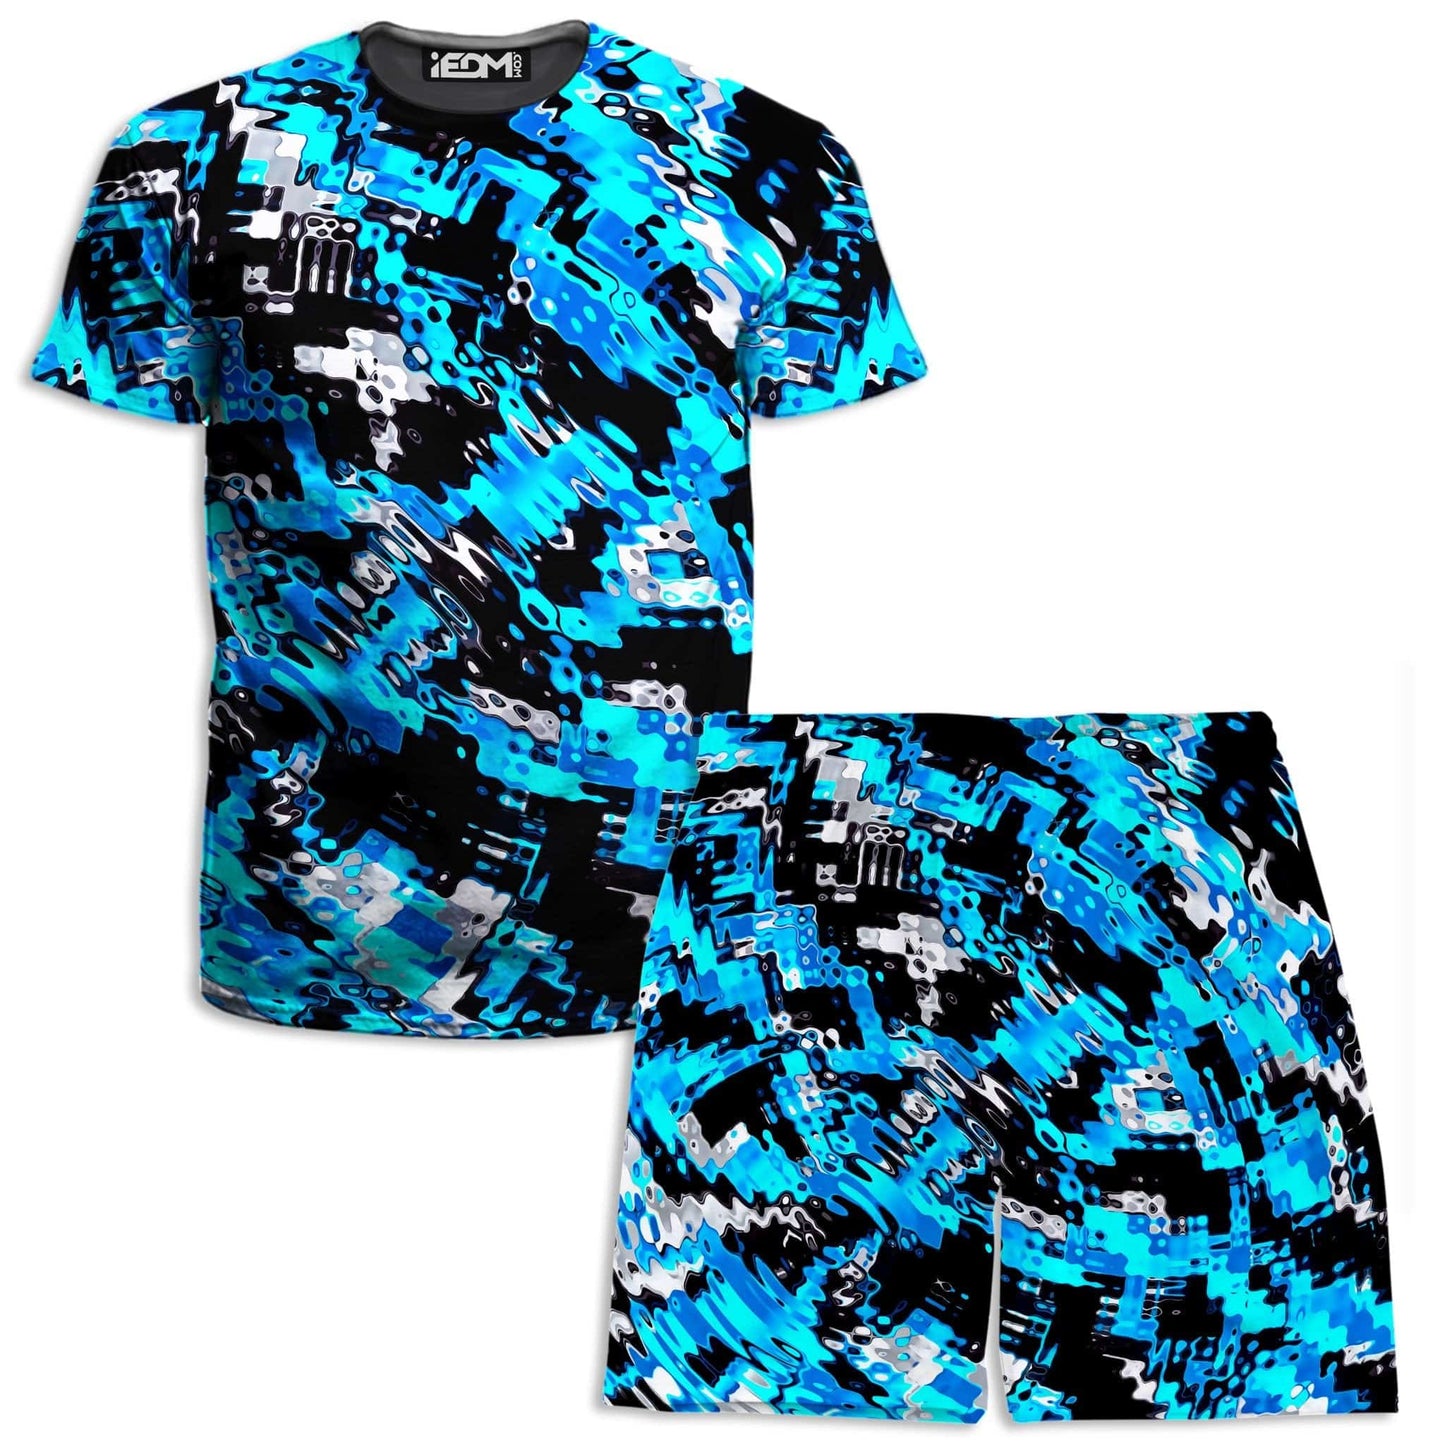 Aqua Rave T-Shirt and Shorts Combo, Big Tex Funkadelic, | iEDM